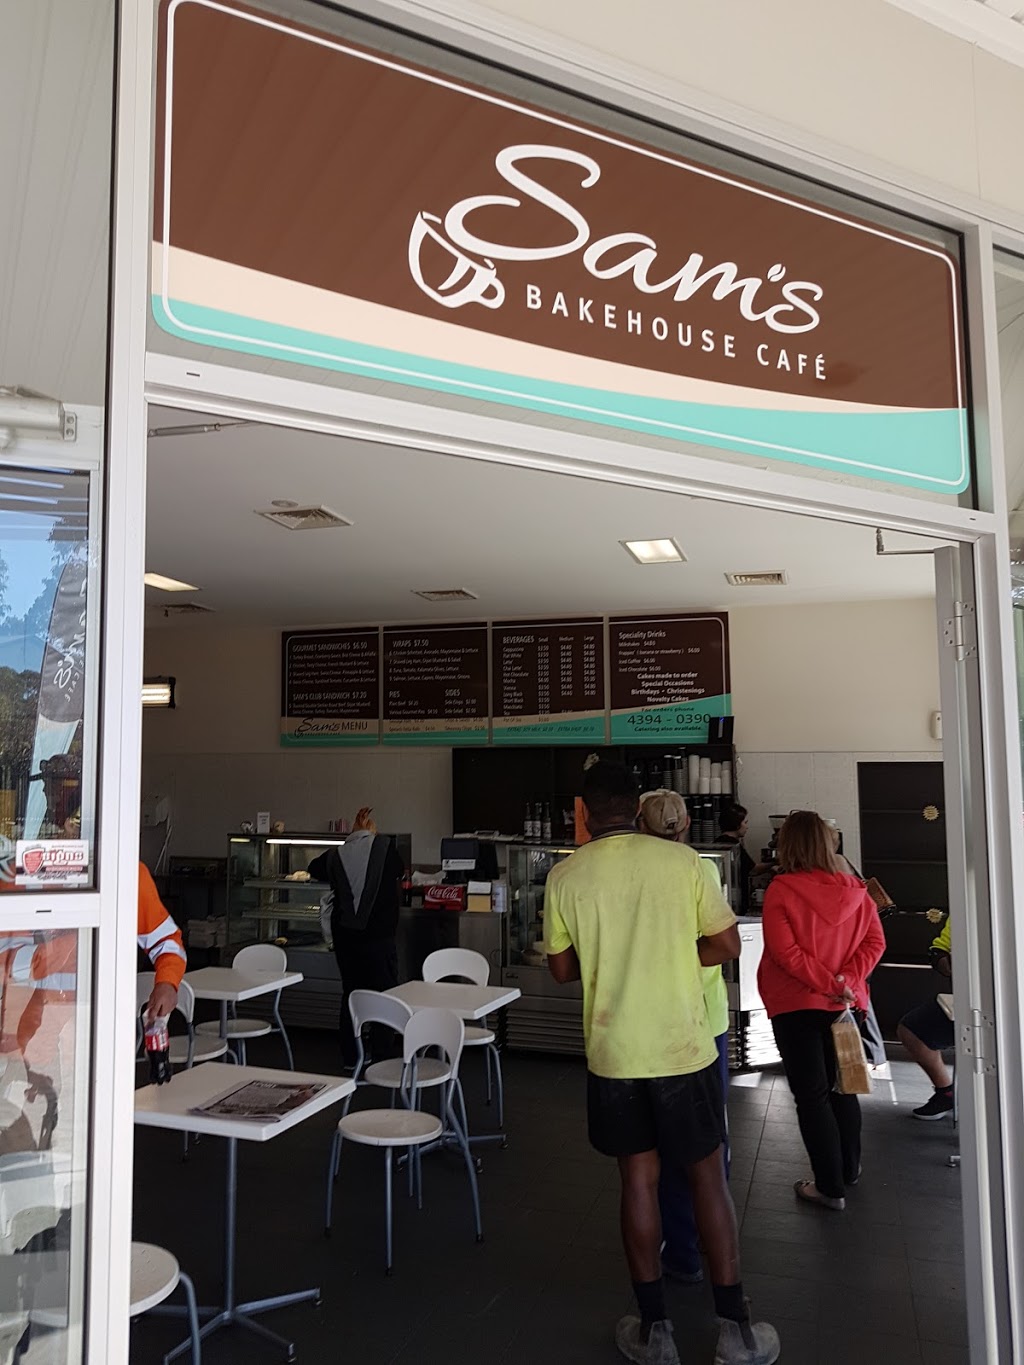 Sams Bakehouse Cafe | cafe | 8/2 Edward Stinson Ave, Wadalba NSW 2259, Australia | 0243940390 OR +61 2 4394 0390